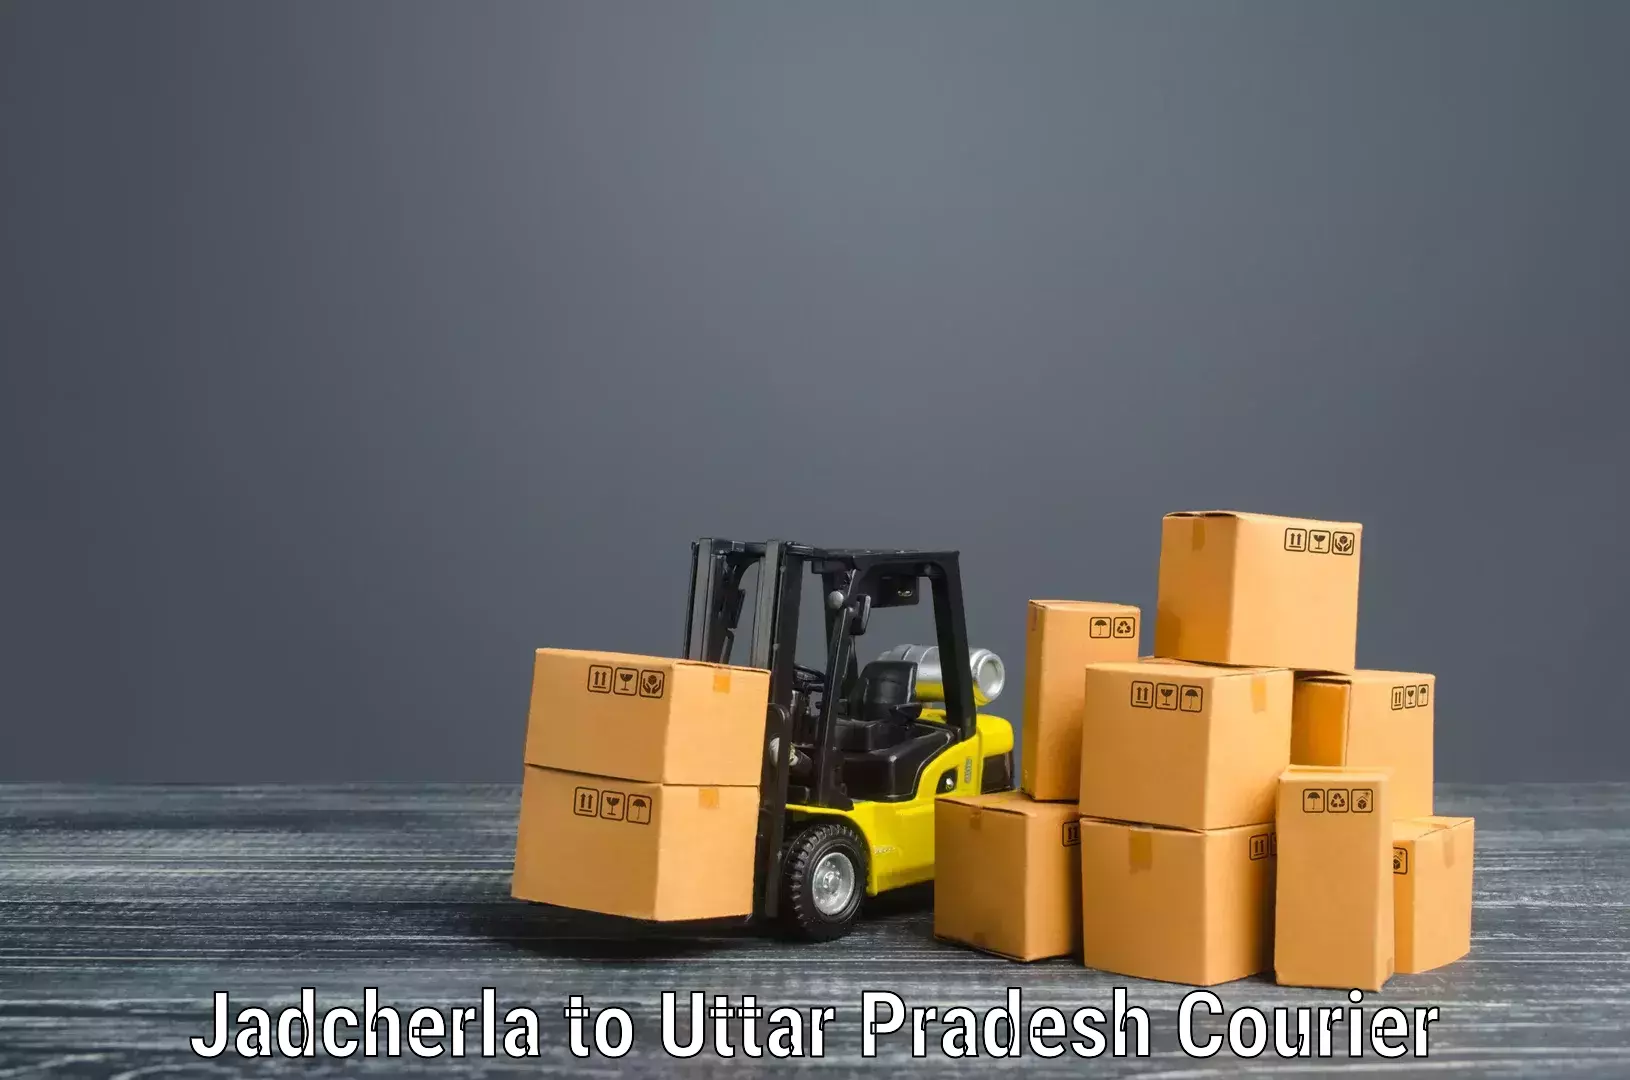 Furniture transport professionals Jadcherla to Badlapur